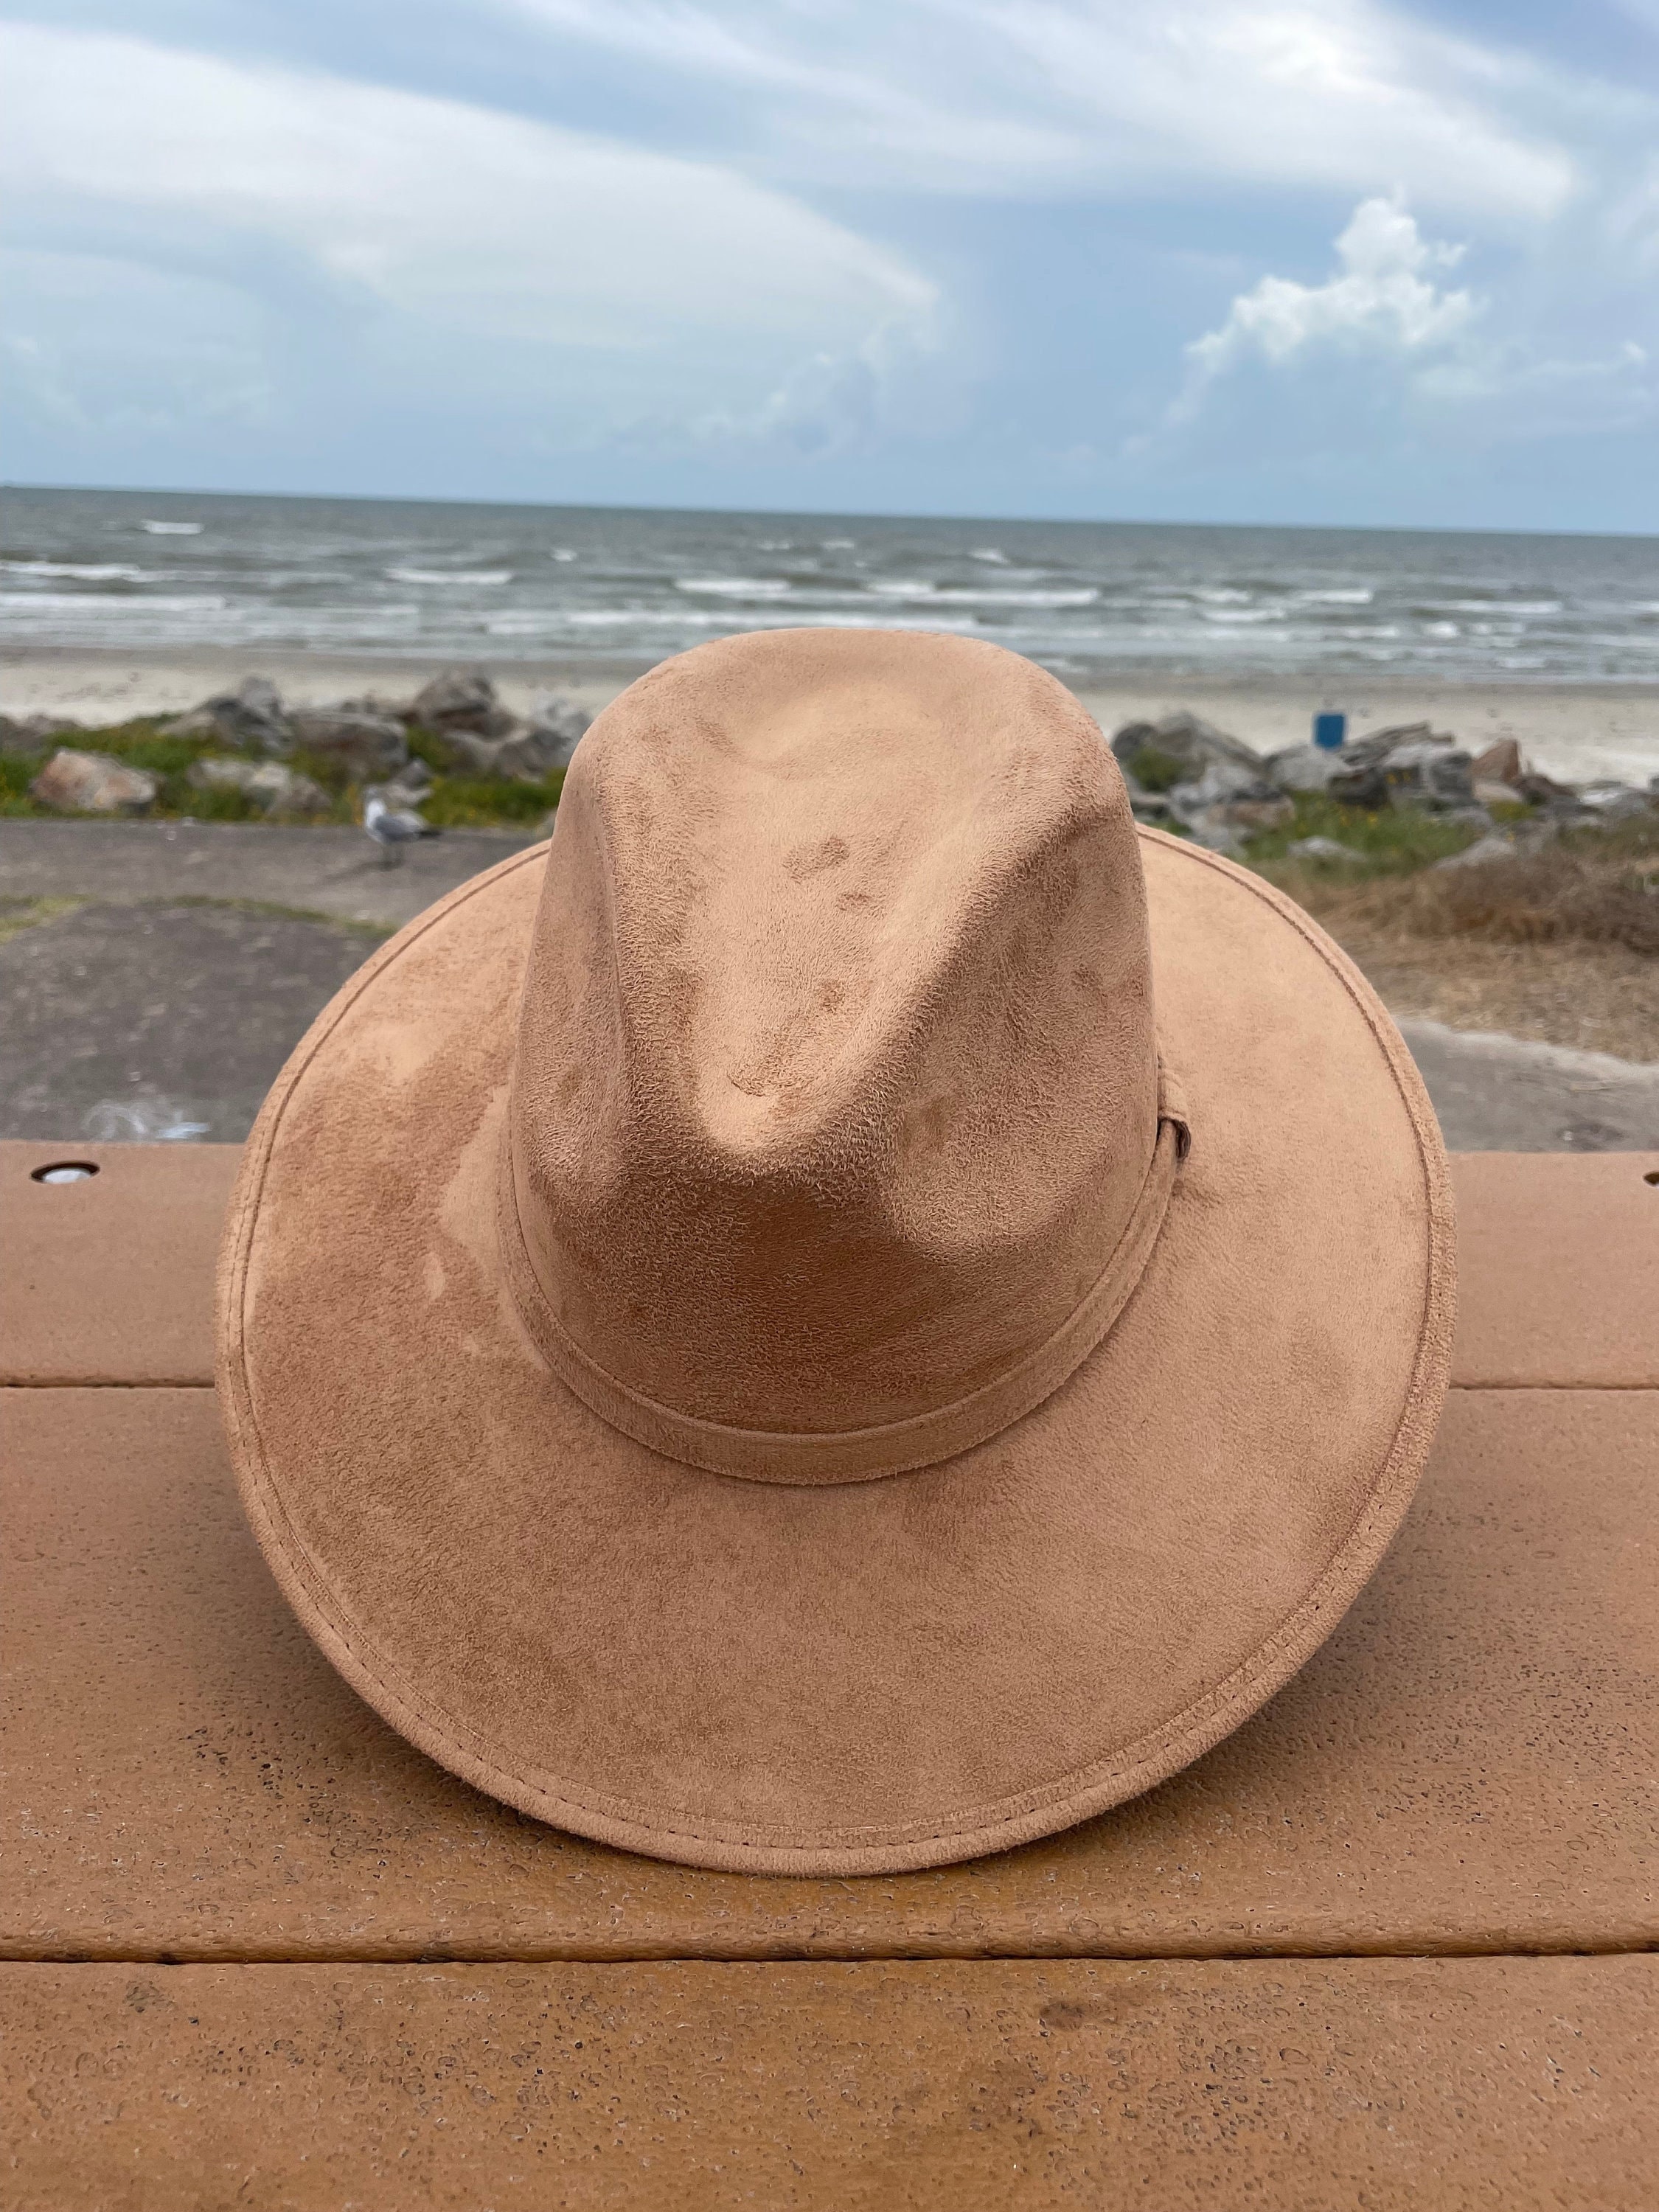 Dorfman Pacific Men's One-Piece Canvas Faux Leather-Trim Safari Hat